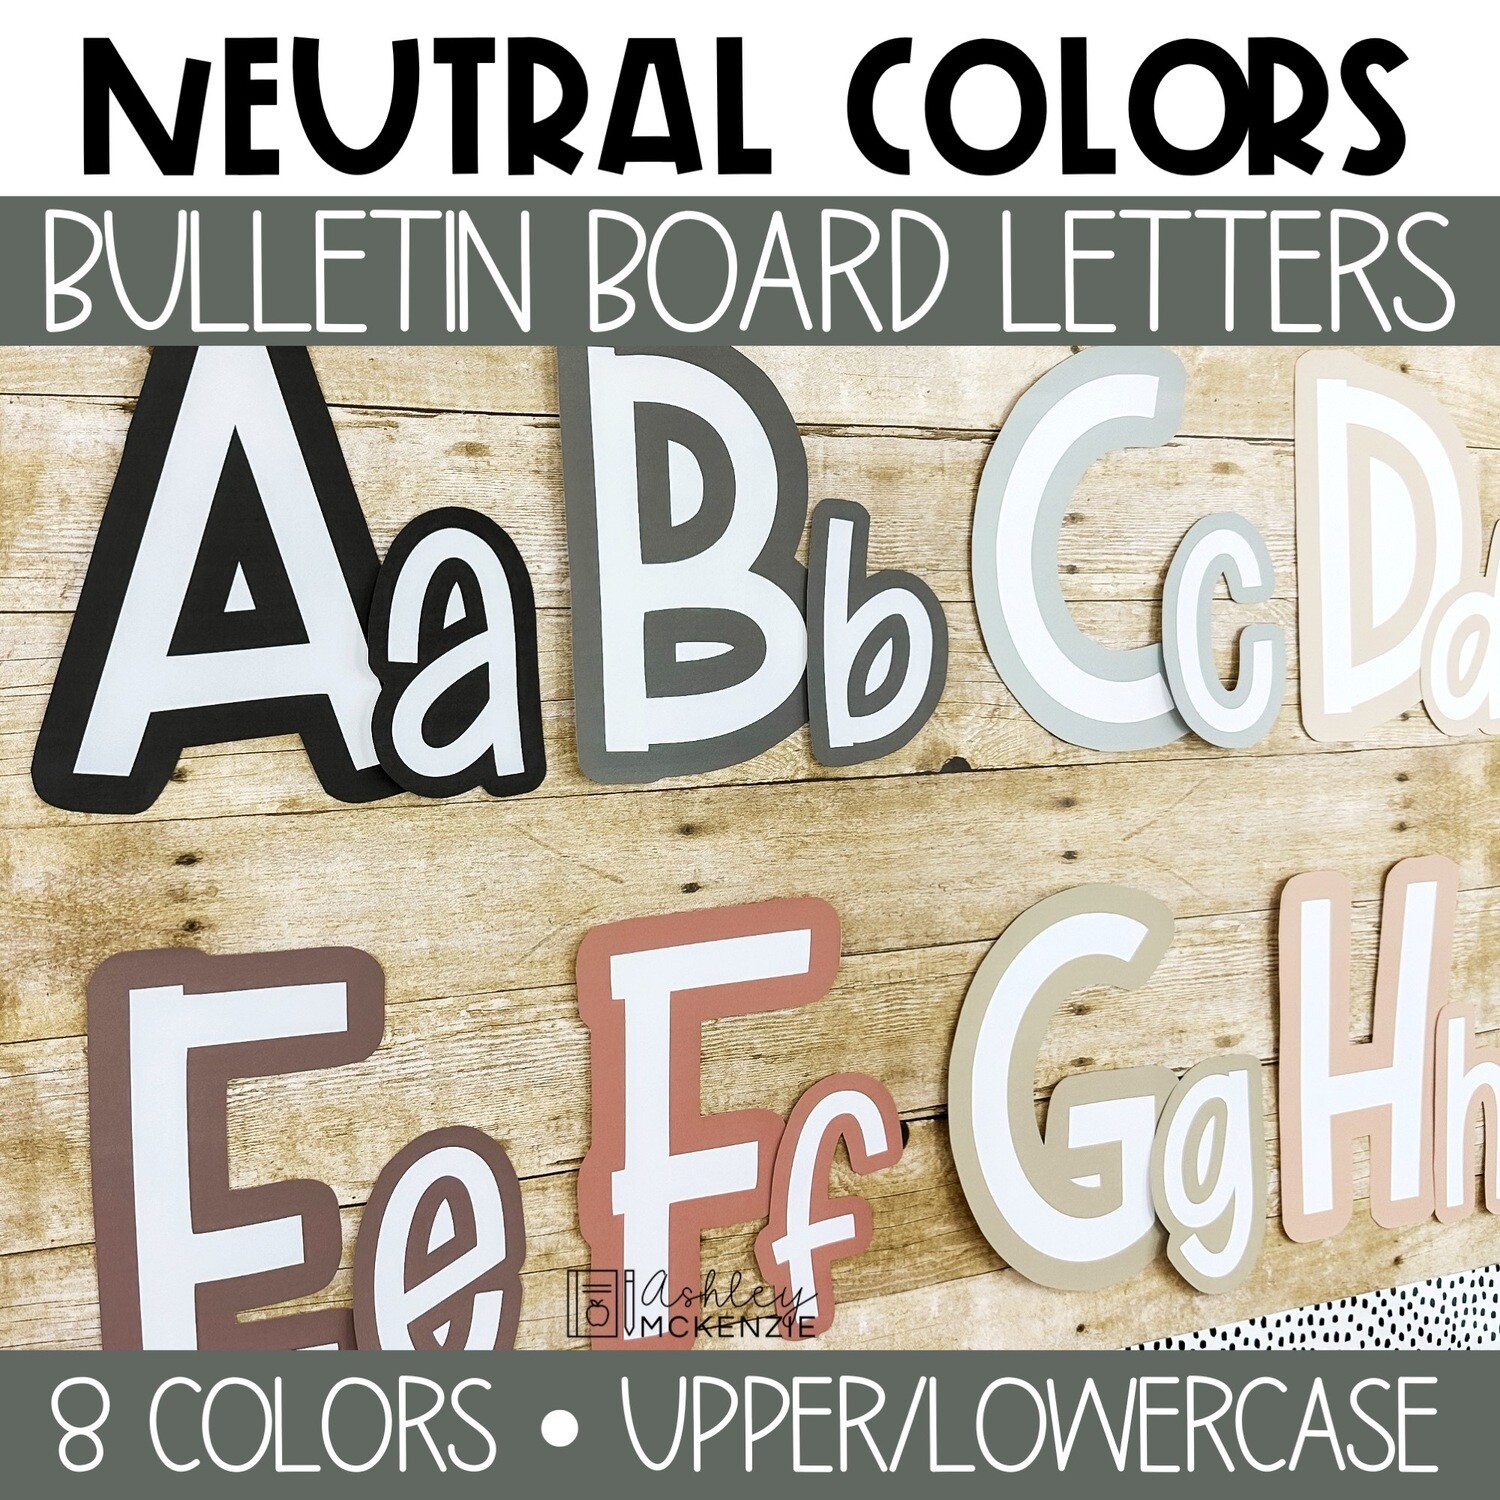 Bulletin board letters